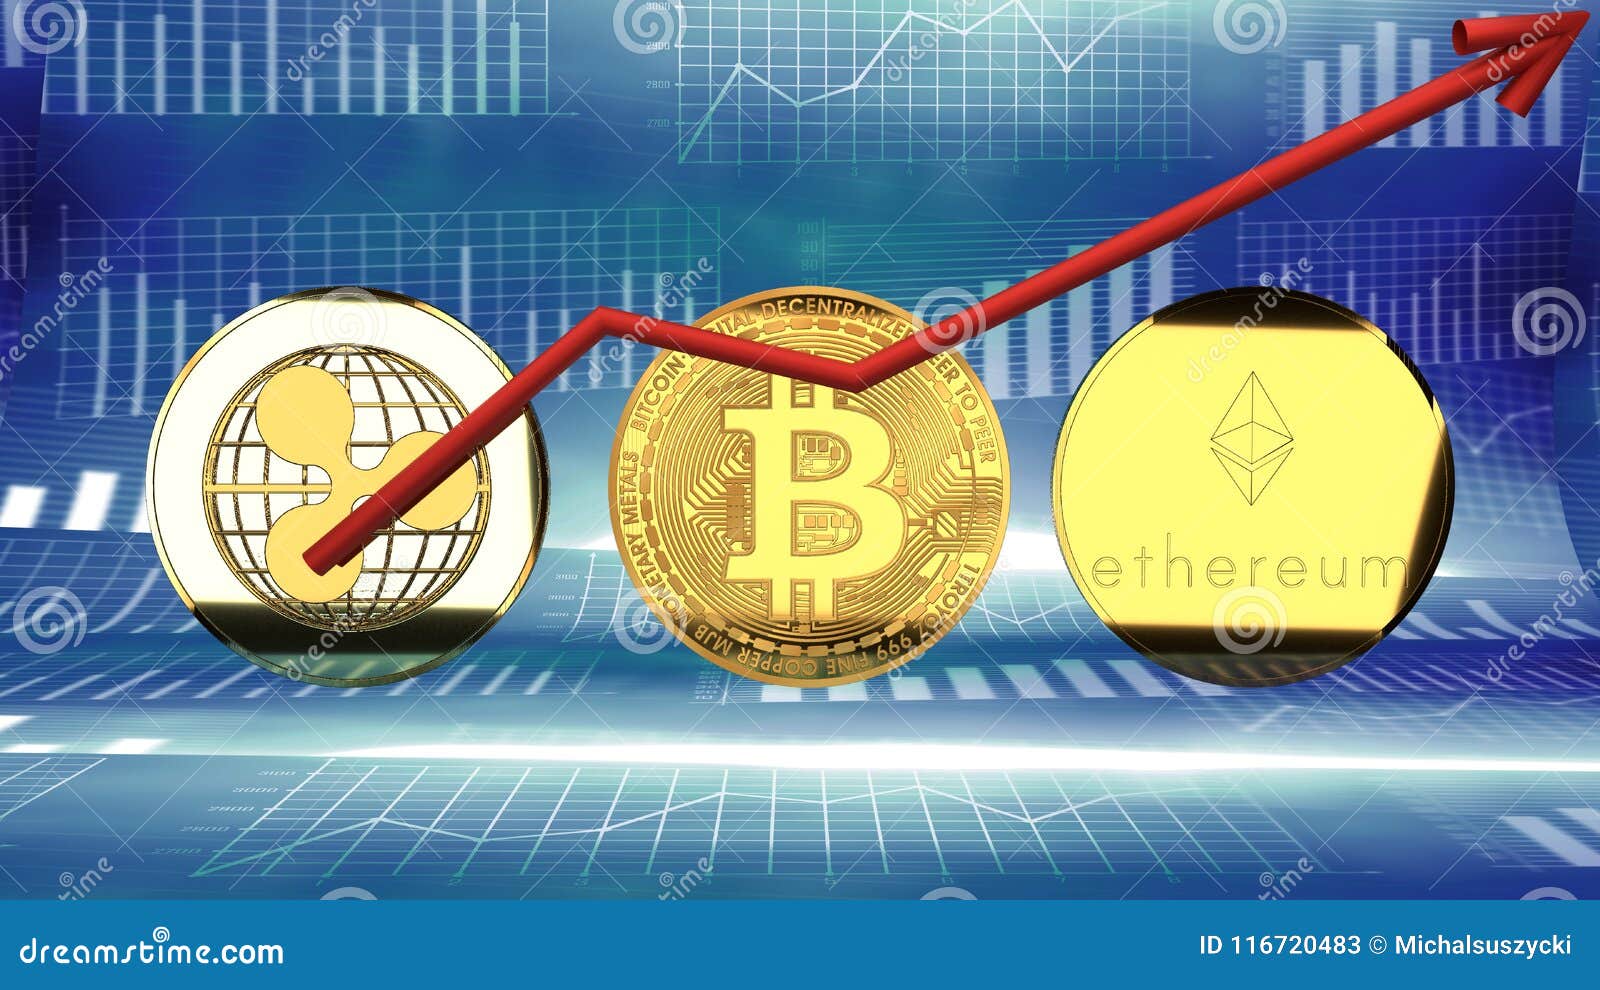 puteți investi în bitcoin prin intermediul pieței de valori bitcoin închis